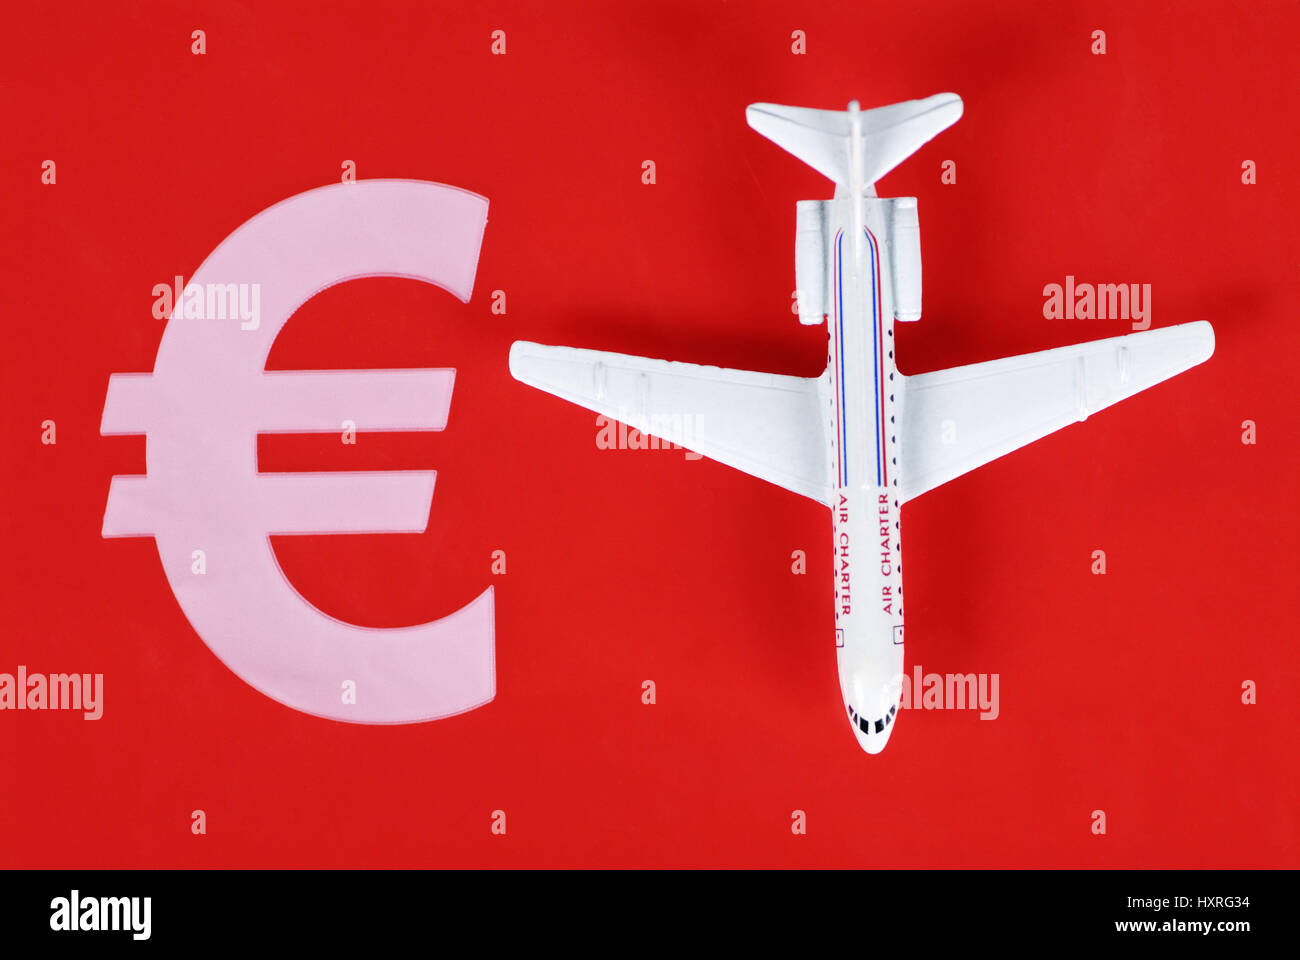 Avión en miniatura y euro-signo, Líneas aereas baratas, Miniaturflugzeug und Euro-Zeichen, Billig-Airlines Foto de stock